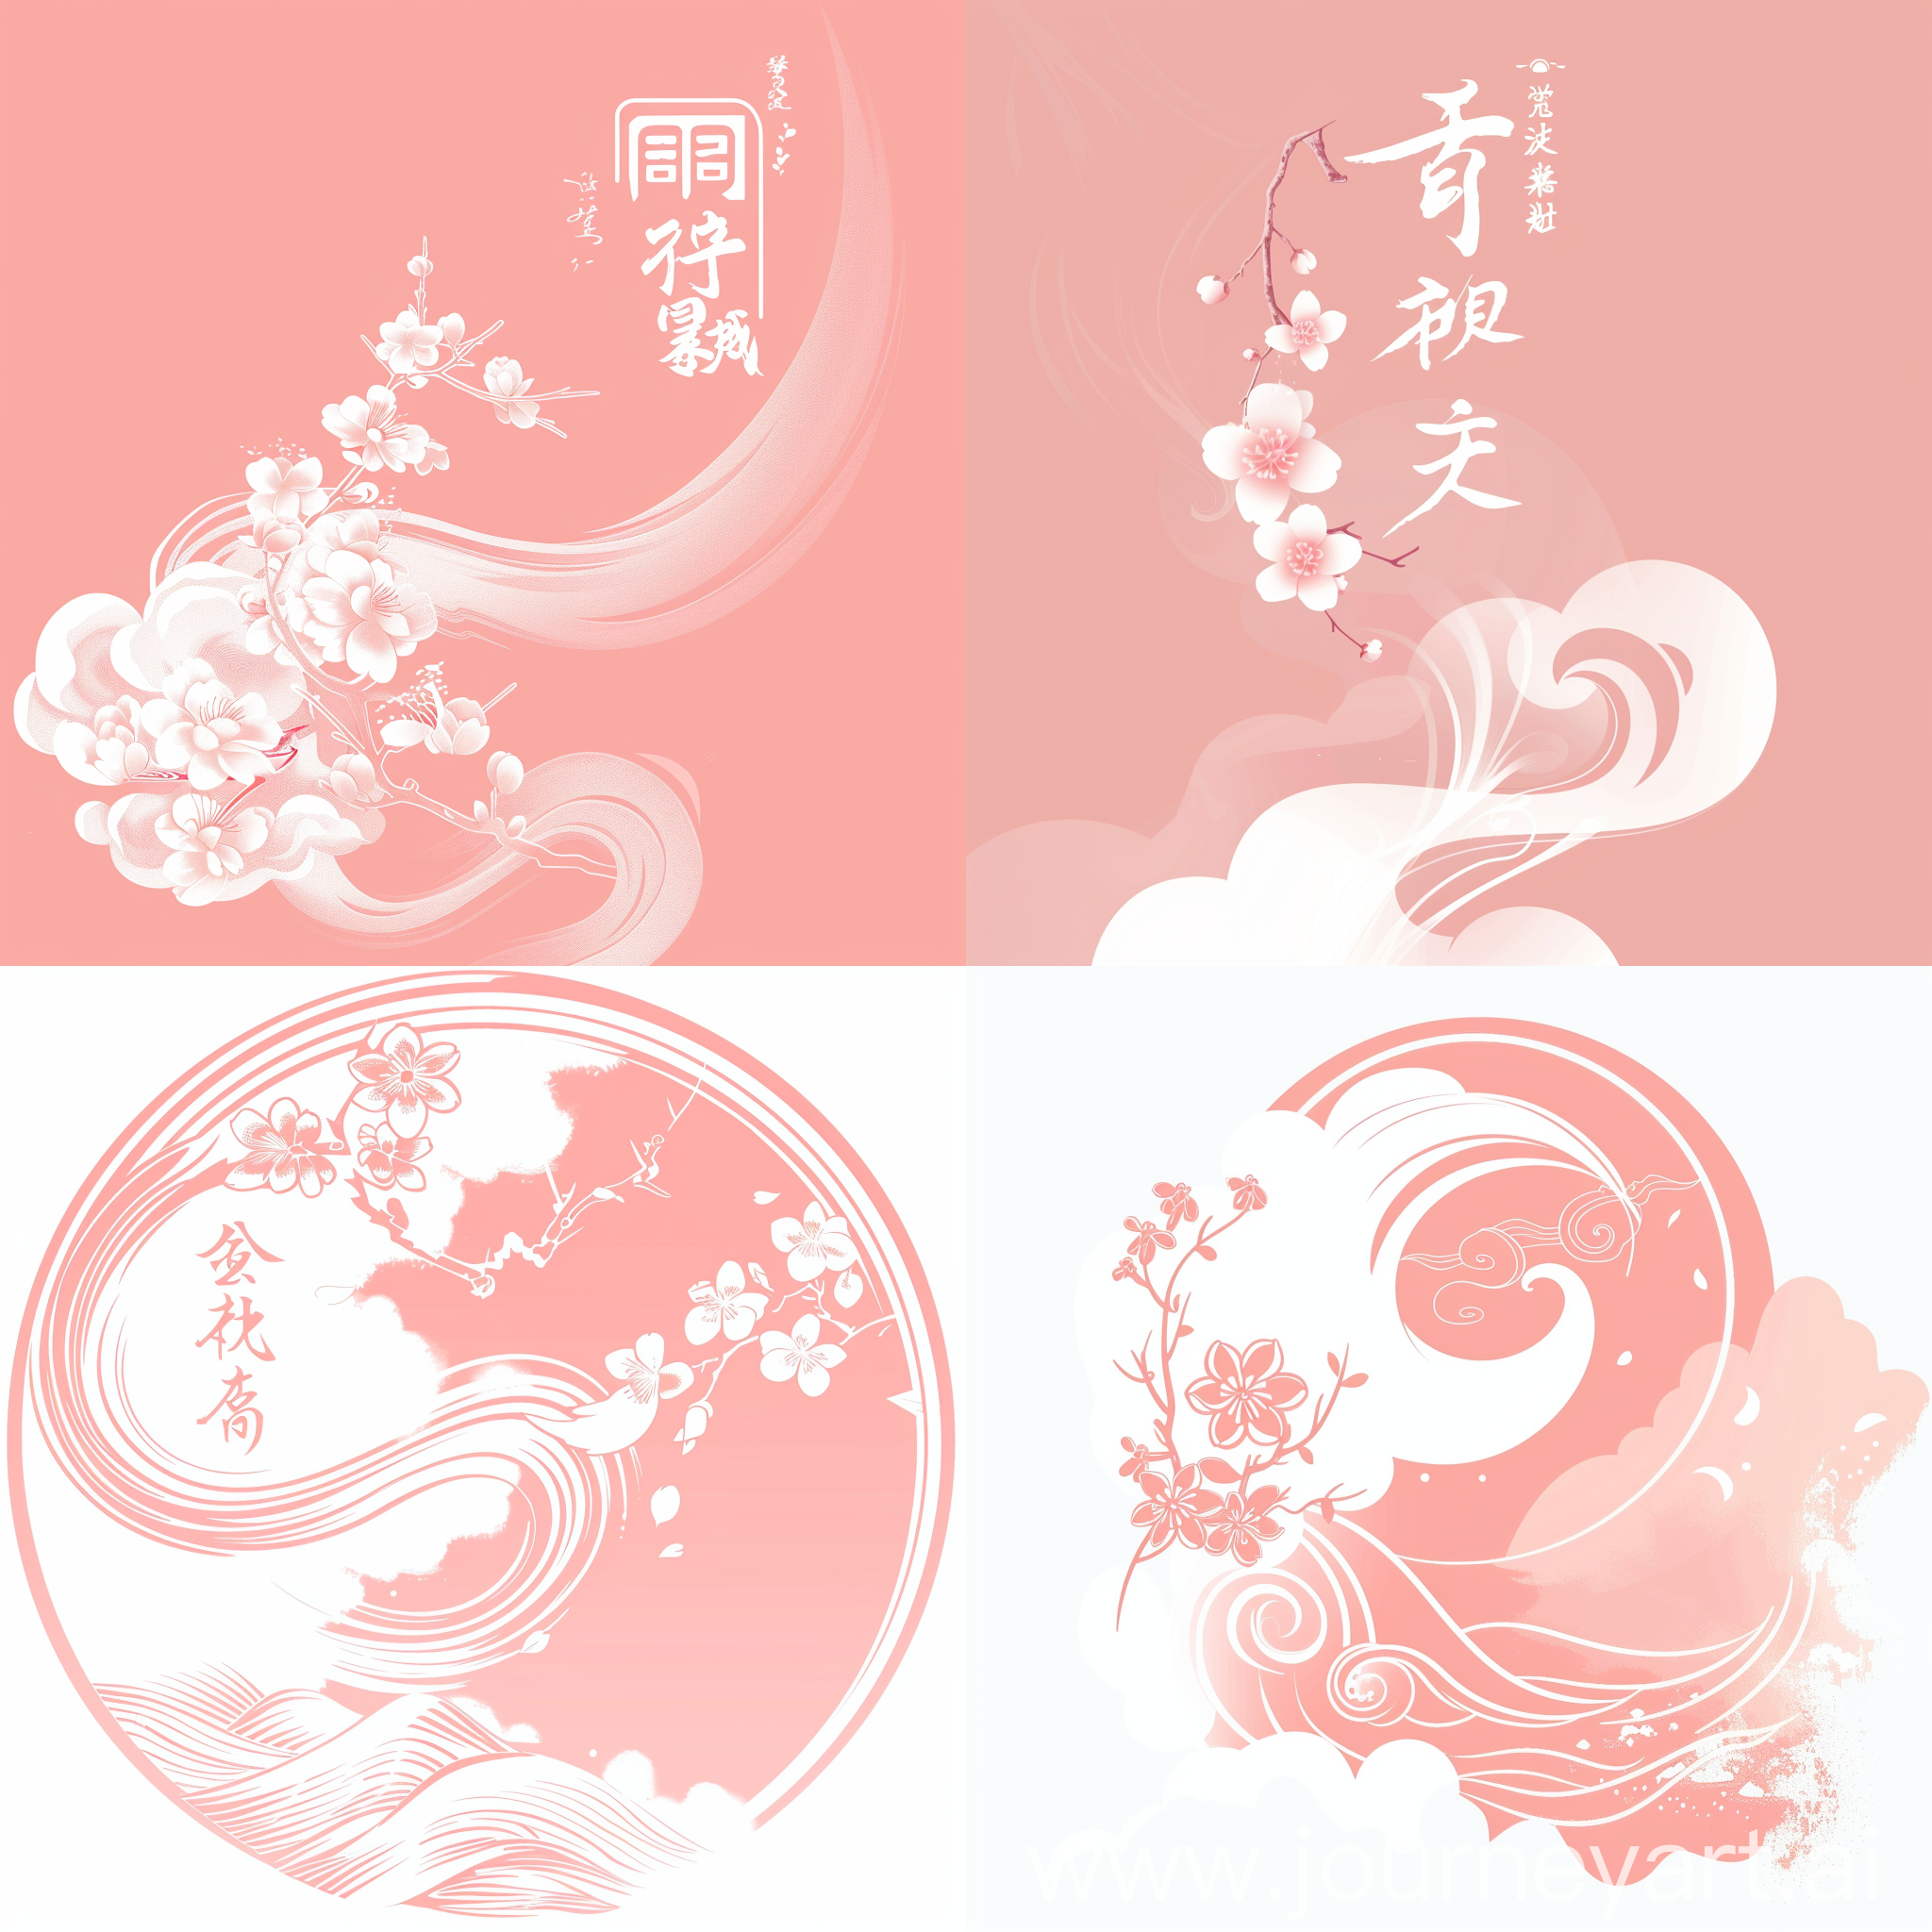 设计一款logo，主体色调是粉色，部分带白，体现出玉石一般温润的色泽，融入”梦里芳华，云涧桃花“的主题